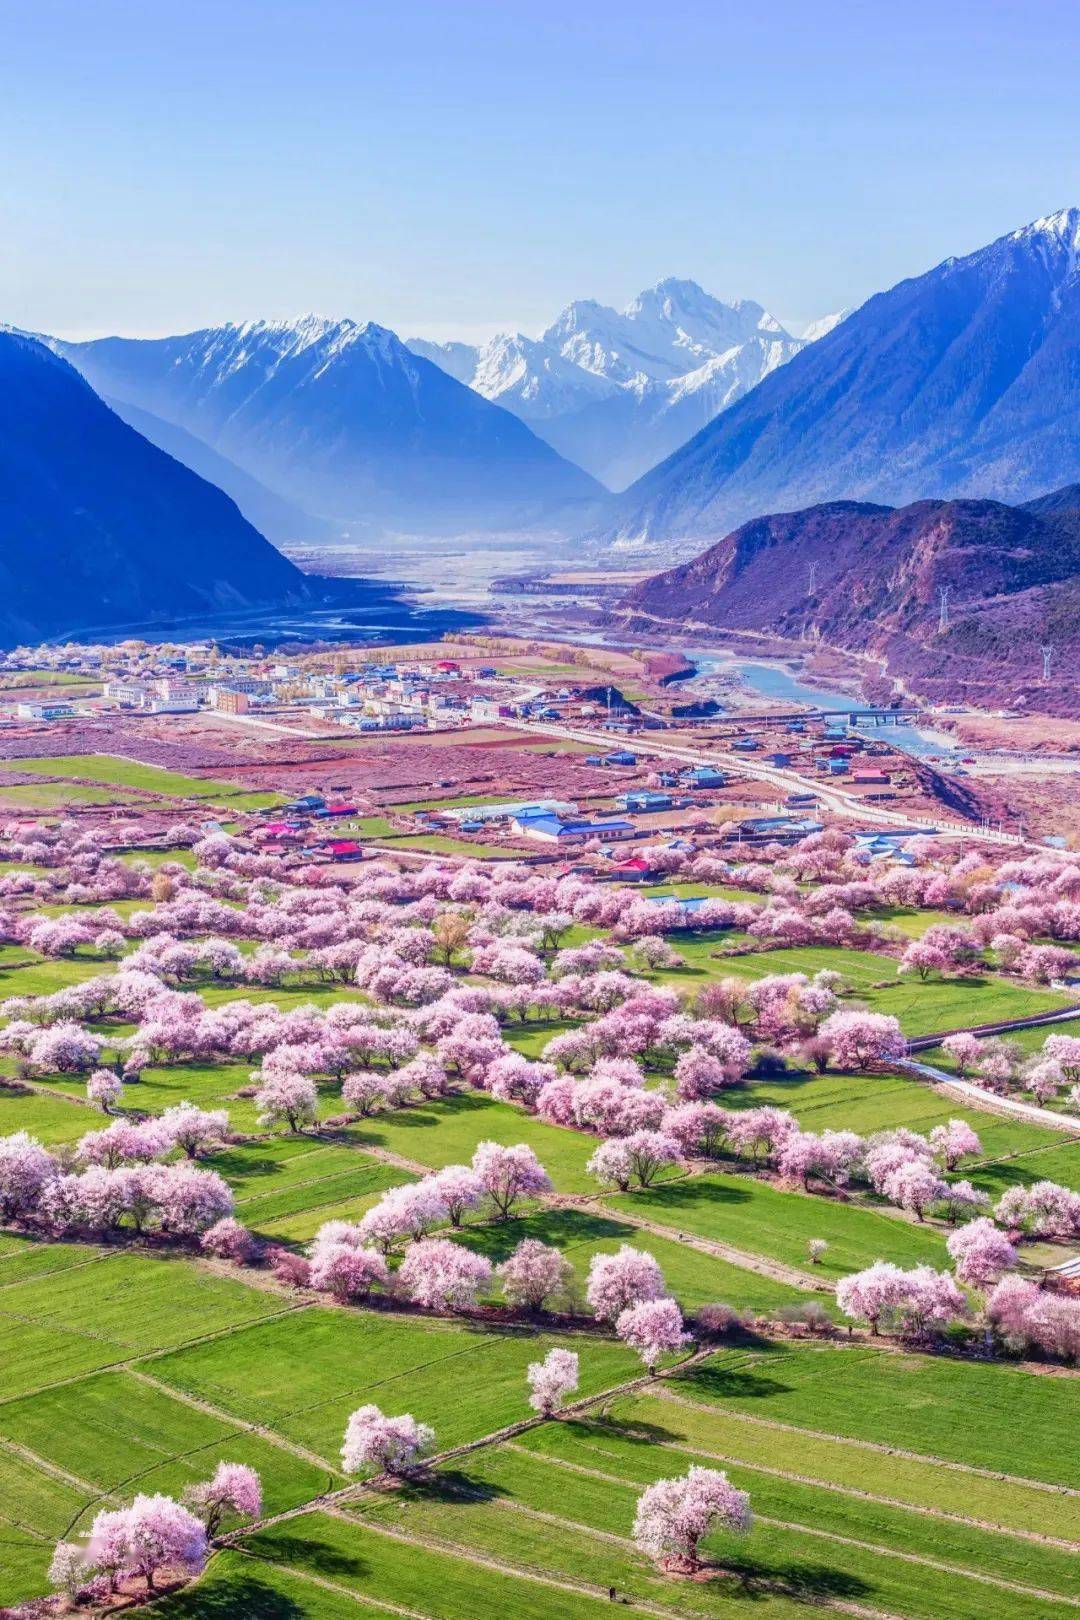 在藏东南这片仙境深处, 一株株粉嫩的桃花,最先绽满了枝头,绵延百里望